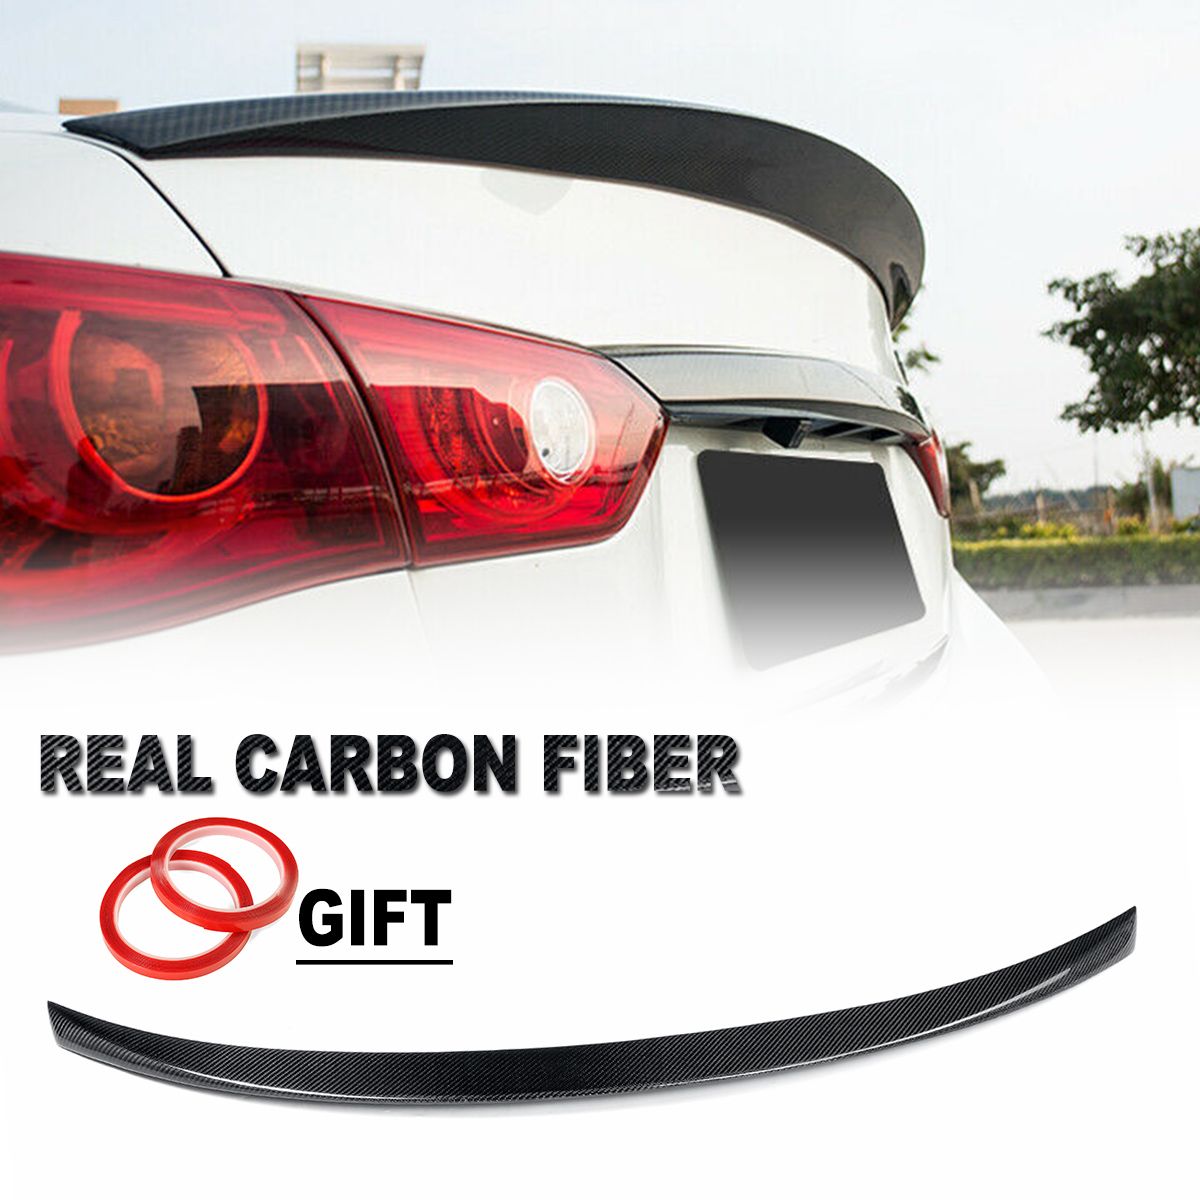 Car-Carbon-Fiber-Style-Rear-Trunk-Spoiler-Splitter-Wing-For-Infiniti-Q50-Jdm-2014-2020-1655988